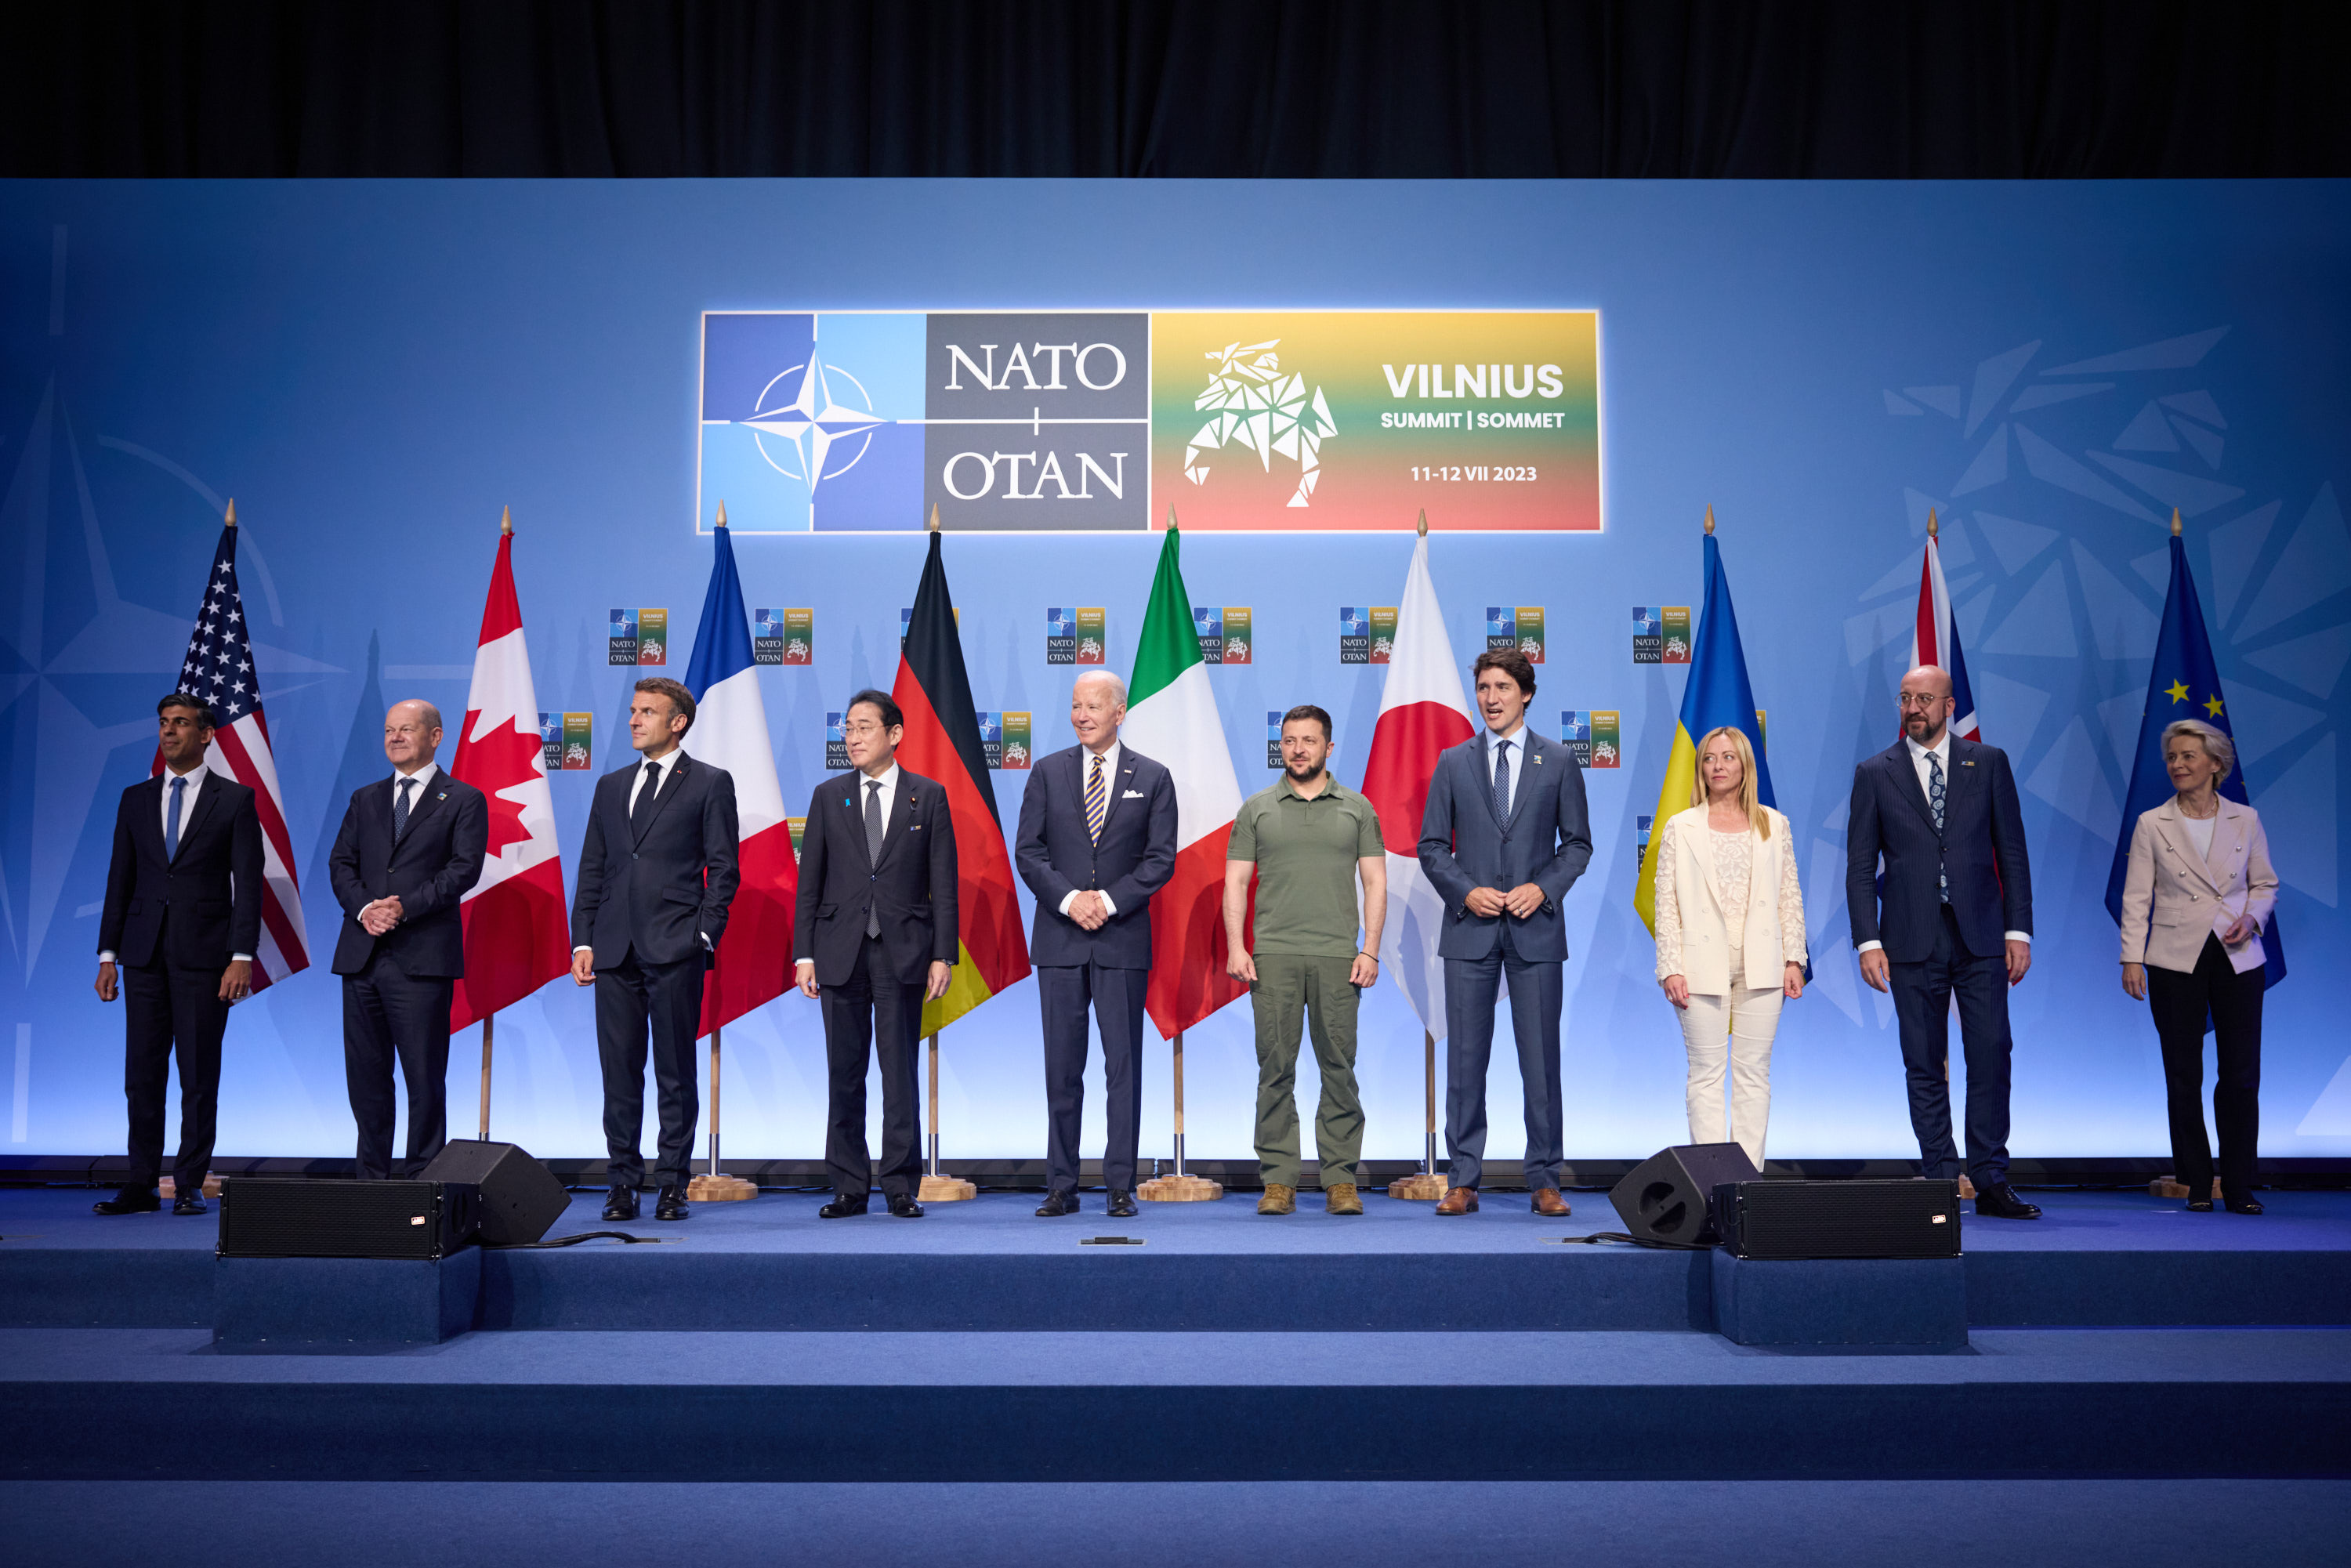 NATO Summit 2023 